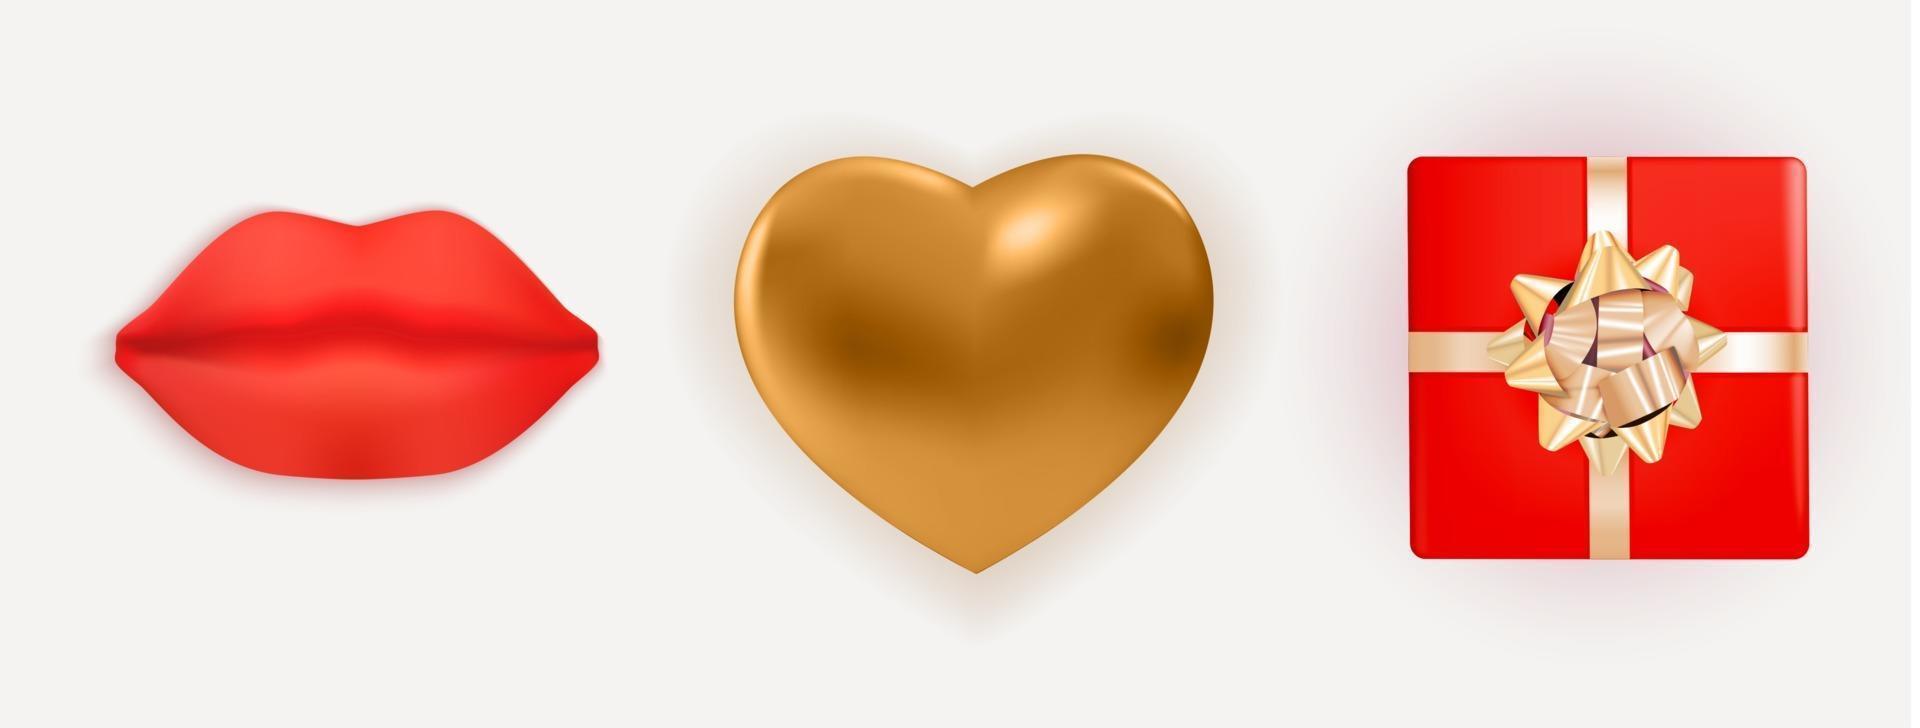 realistico cuore in metallo dorato lucido, labbra rosse e confezione regalo con fiocco e nastro. elementi di design per poster di san valentino, banner. illustrazione vettoriale 3d eps10